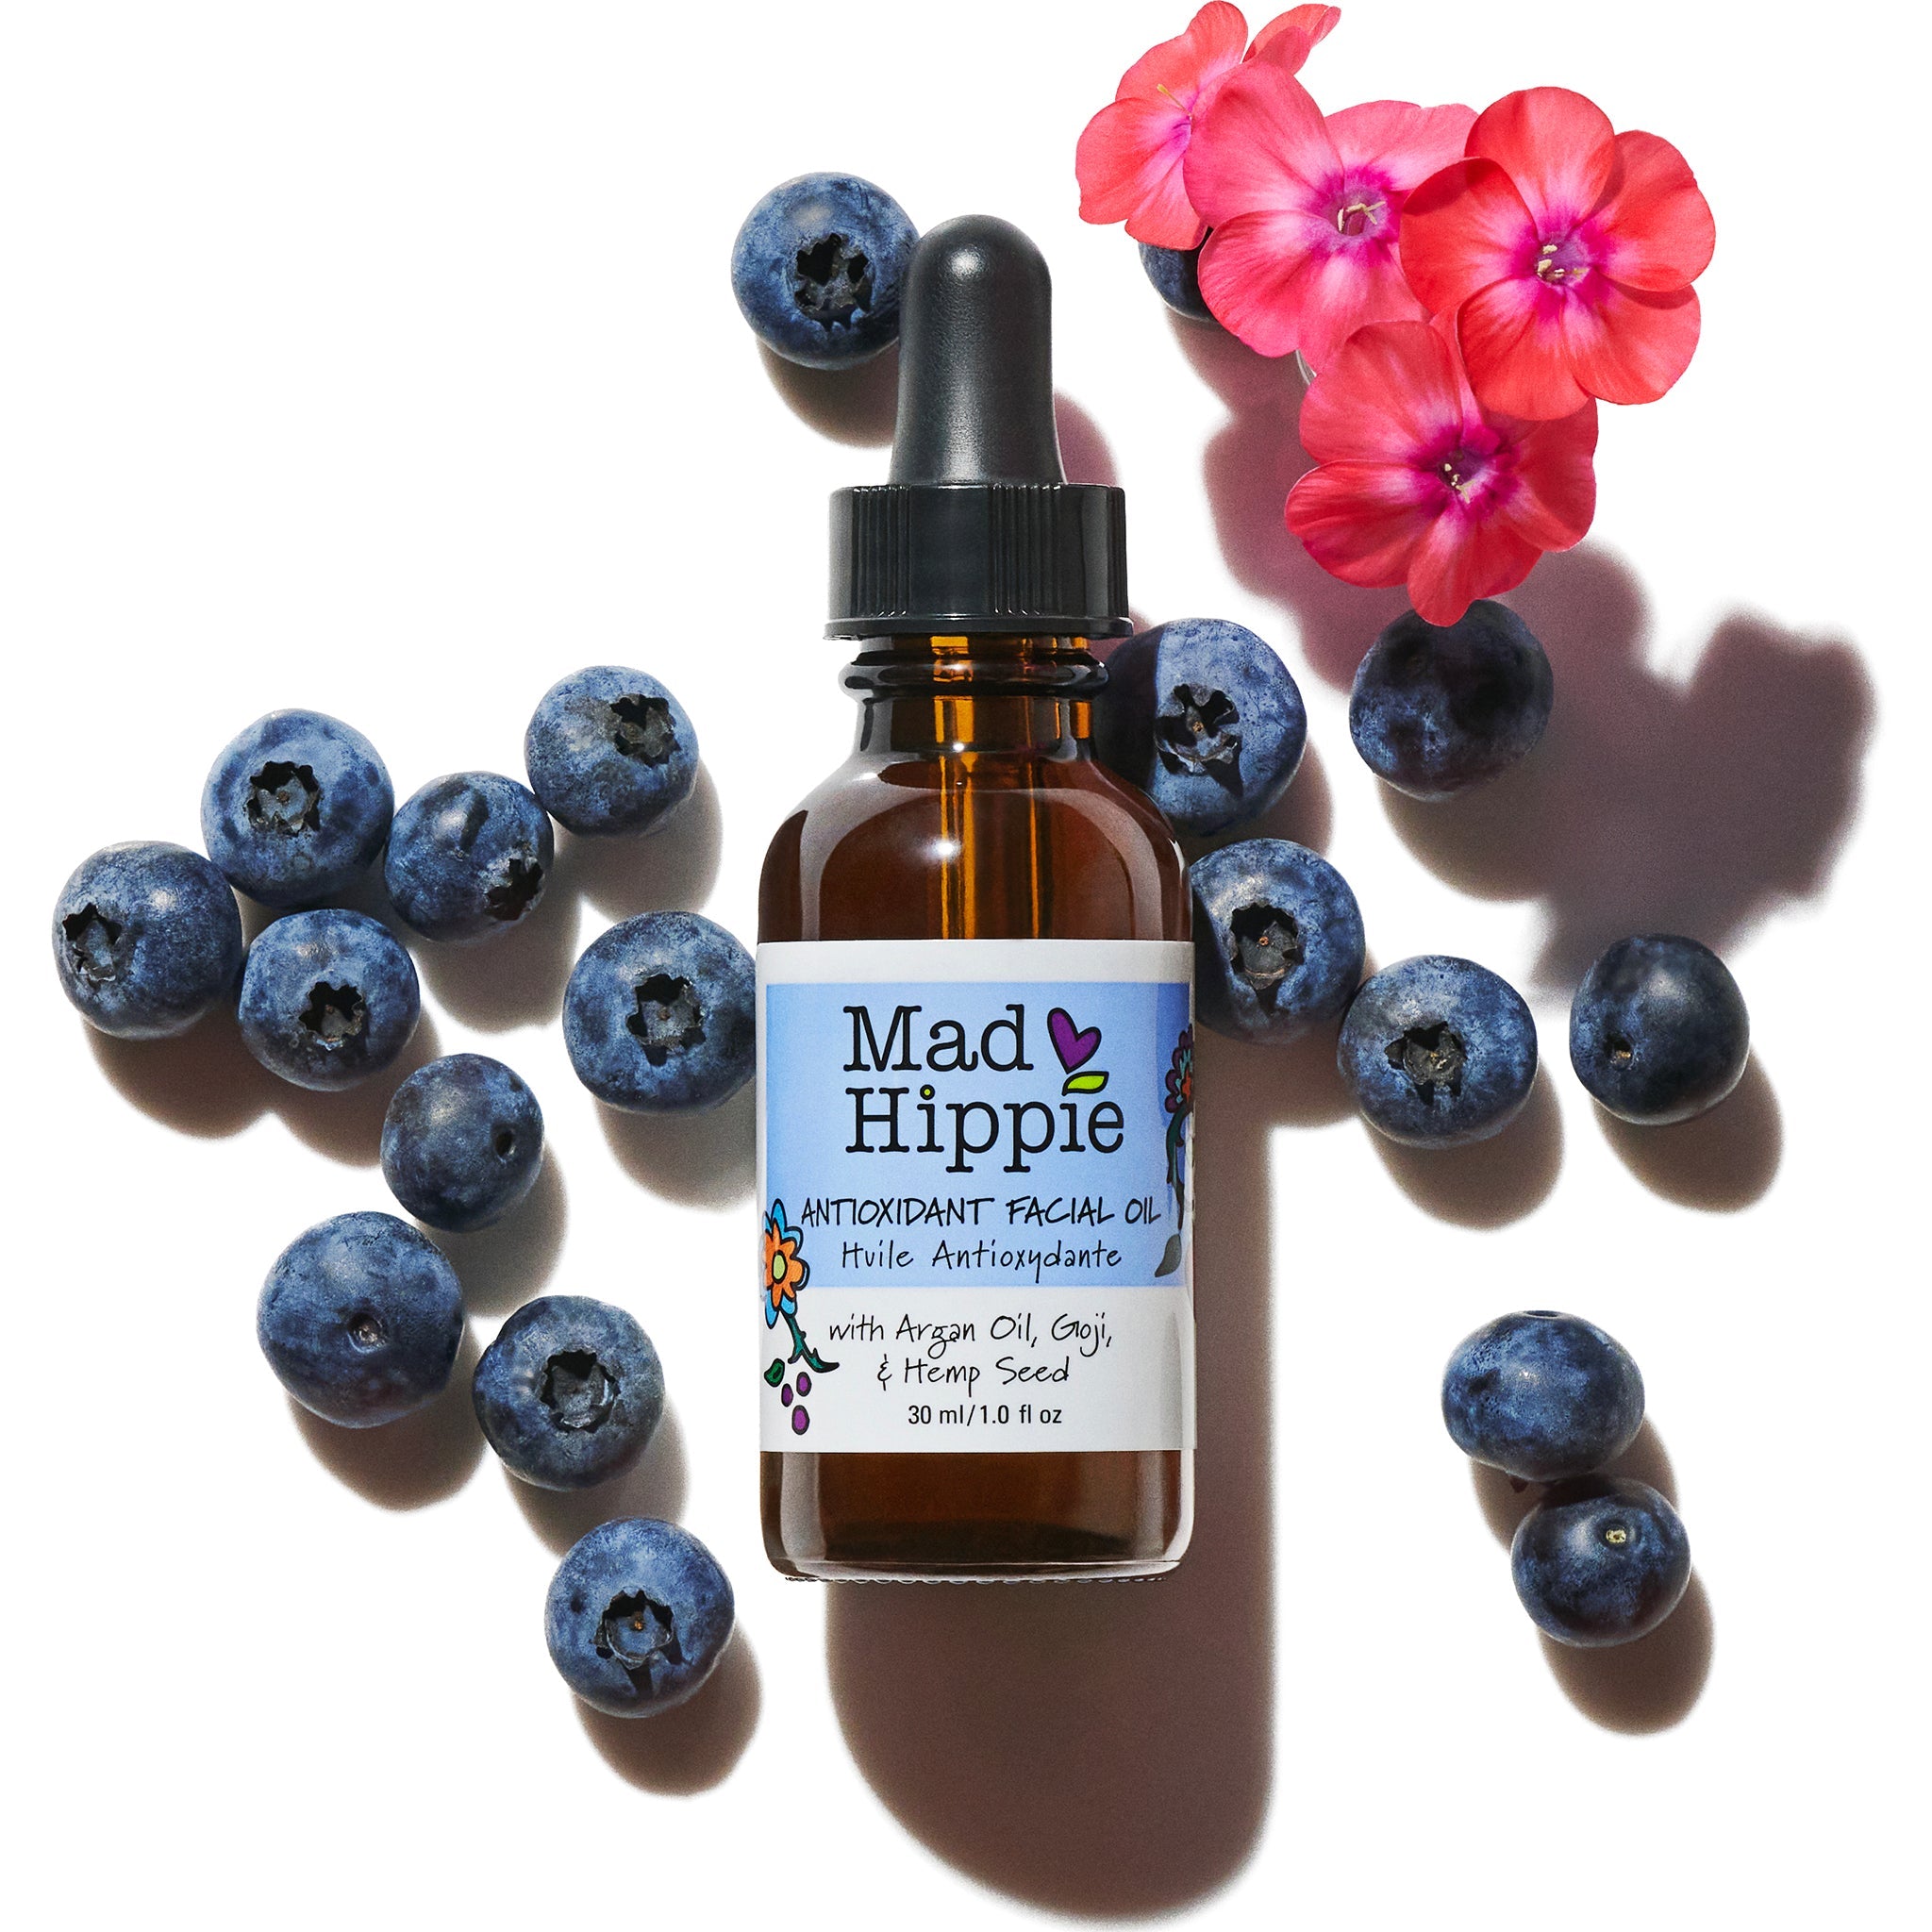 Mad Hippie Antioxidant Facial Oil 1oz